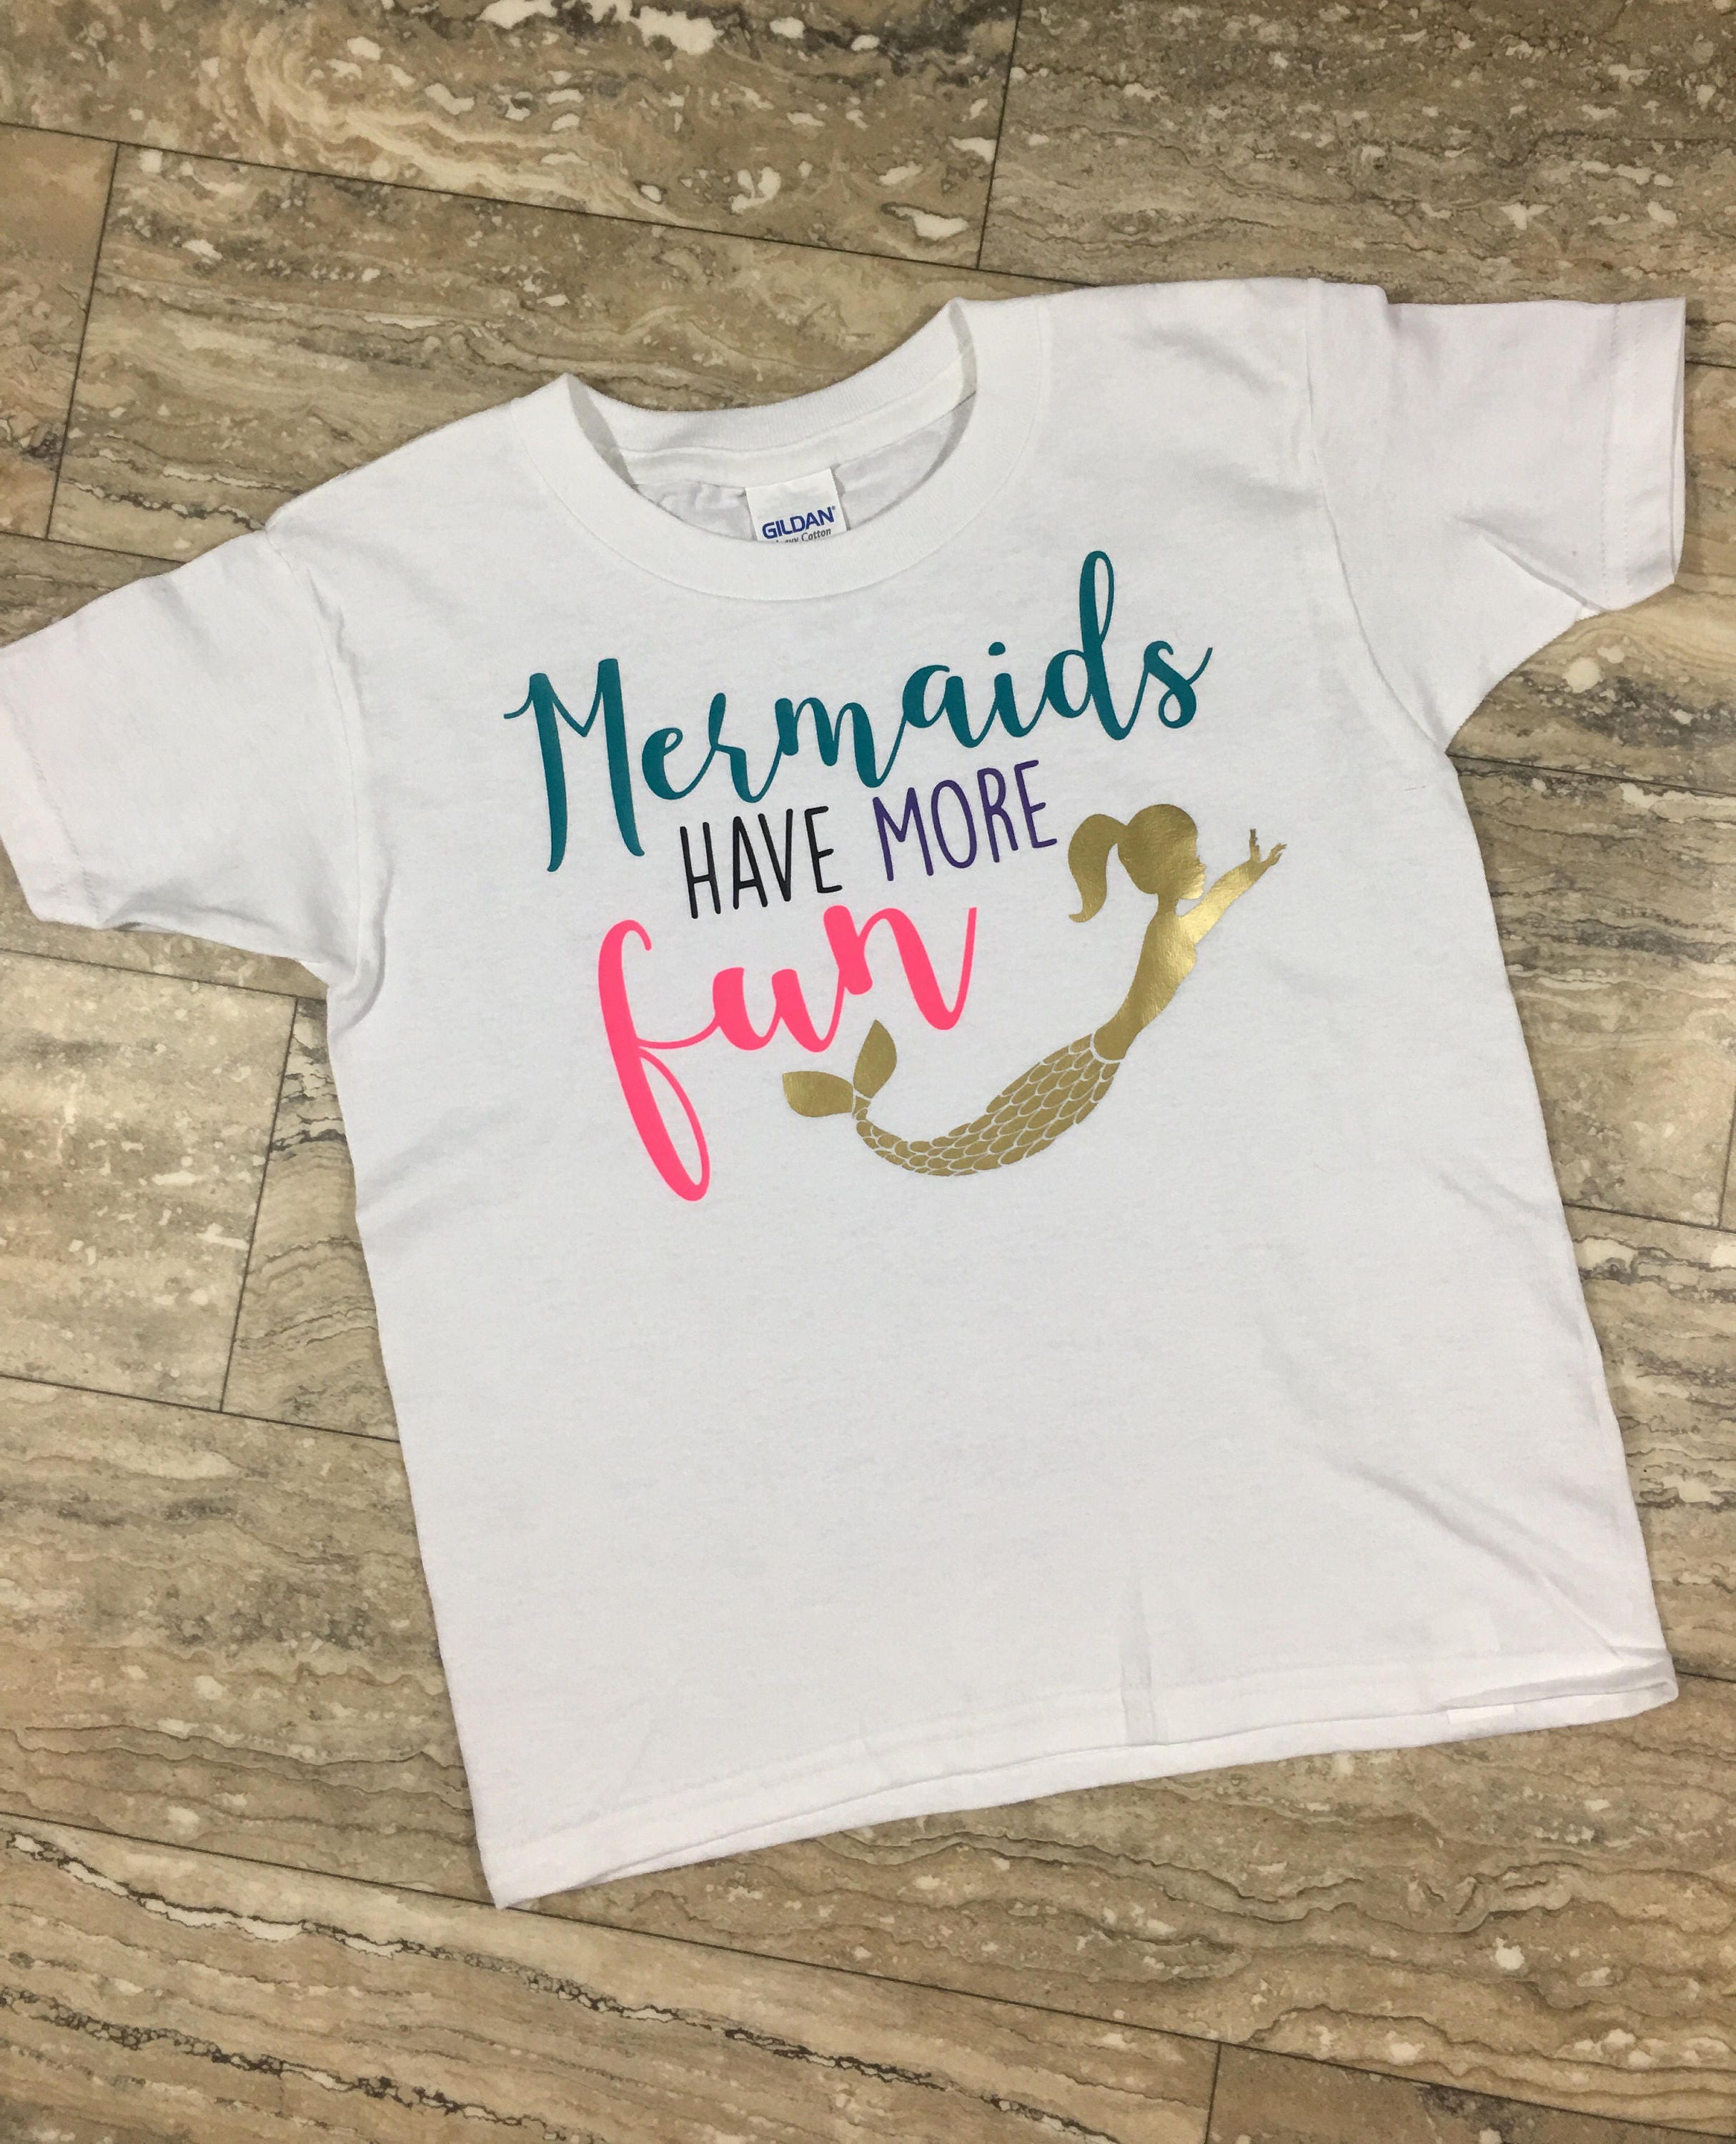 Mermaids Have More Fun Shirt, Mermaid Tail, Funny Girl Beach Starfish Tee, Baby 99 Percent